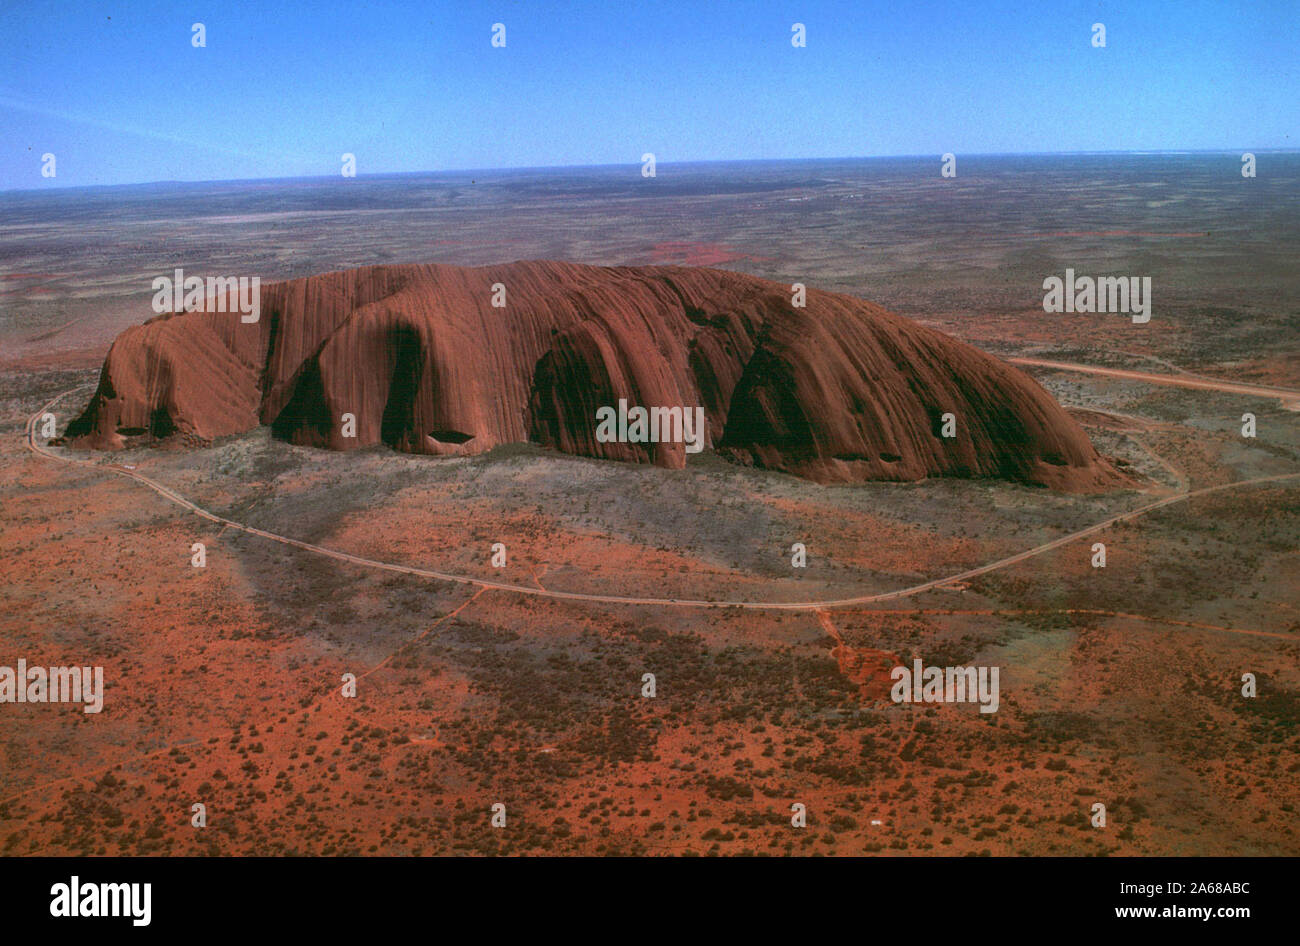 Maggio 16, 2001; Australia; File foto: Uluru, il gigante rosso monolito precedentemente noto come Ayers Rock in Australia centrale, è stata chiusa ai visitatori per la prima volta dopo la morte della regione più alti aborigeno, media riportati 14 maggio 2001. La sua famiglia ha chiesto al comitato di gestione misto dell'Uluru-Kata Tjuta National Park per chiudere l'arrampicata ai turisti durante il primo periodo di lutto. Non è stato immediatamente chiaro se sarebbe riaprire. Credito: Earl S. Cryer/ZUMAPRESS.com/Alamy Live News Foto Stock